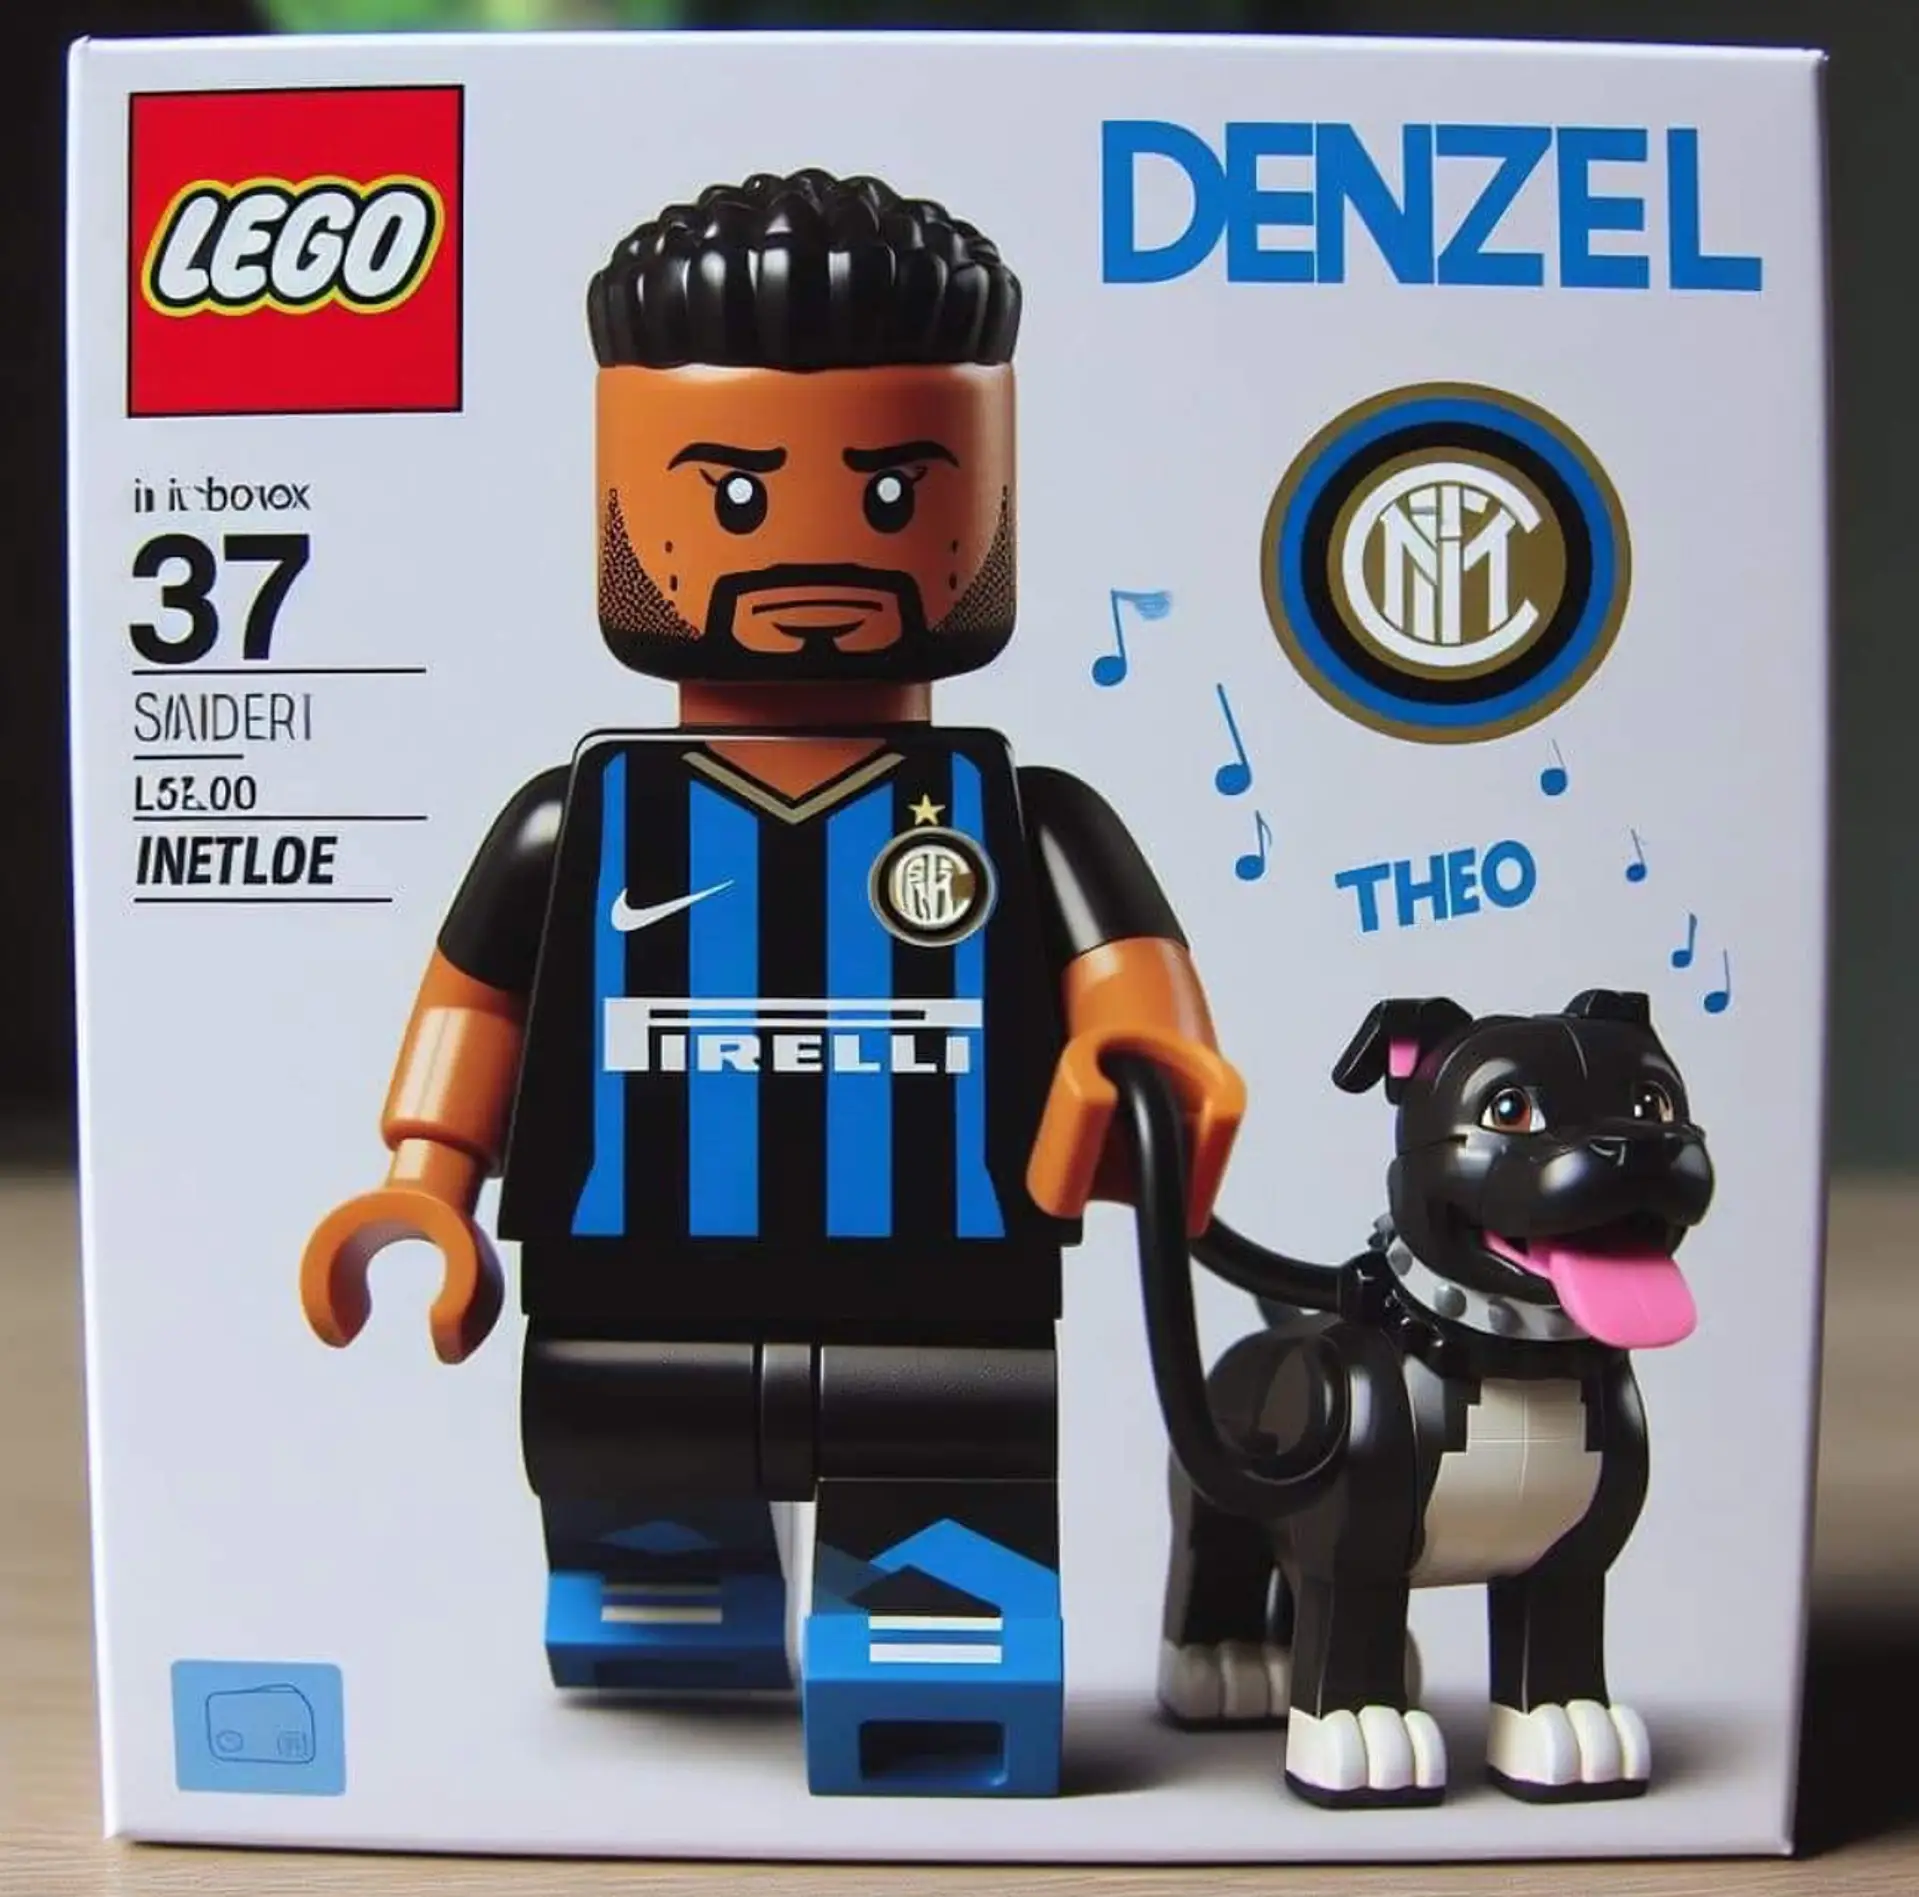 Lego Denzel!